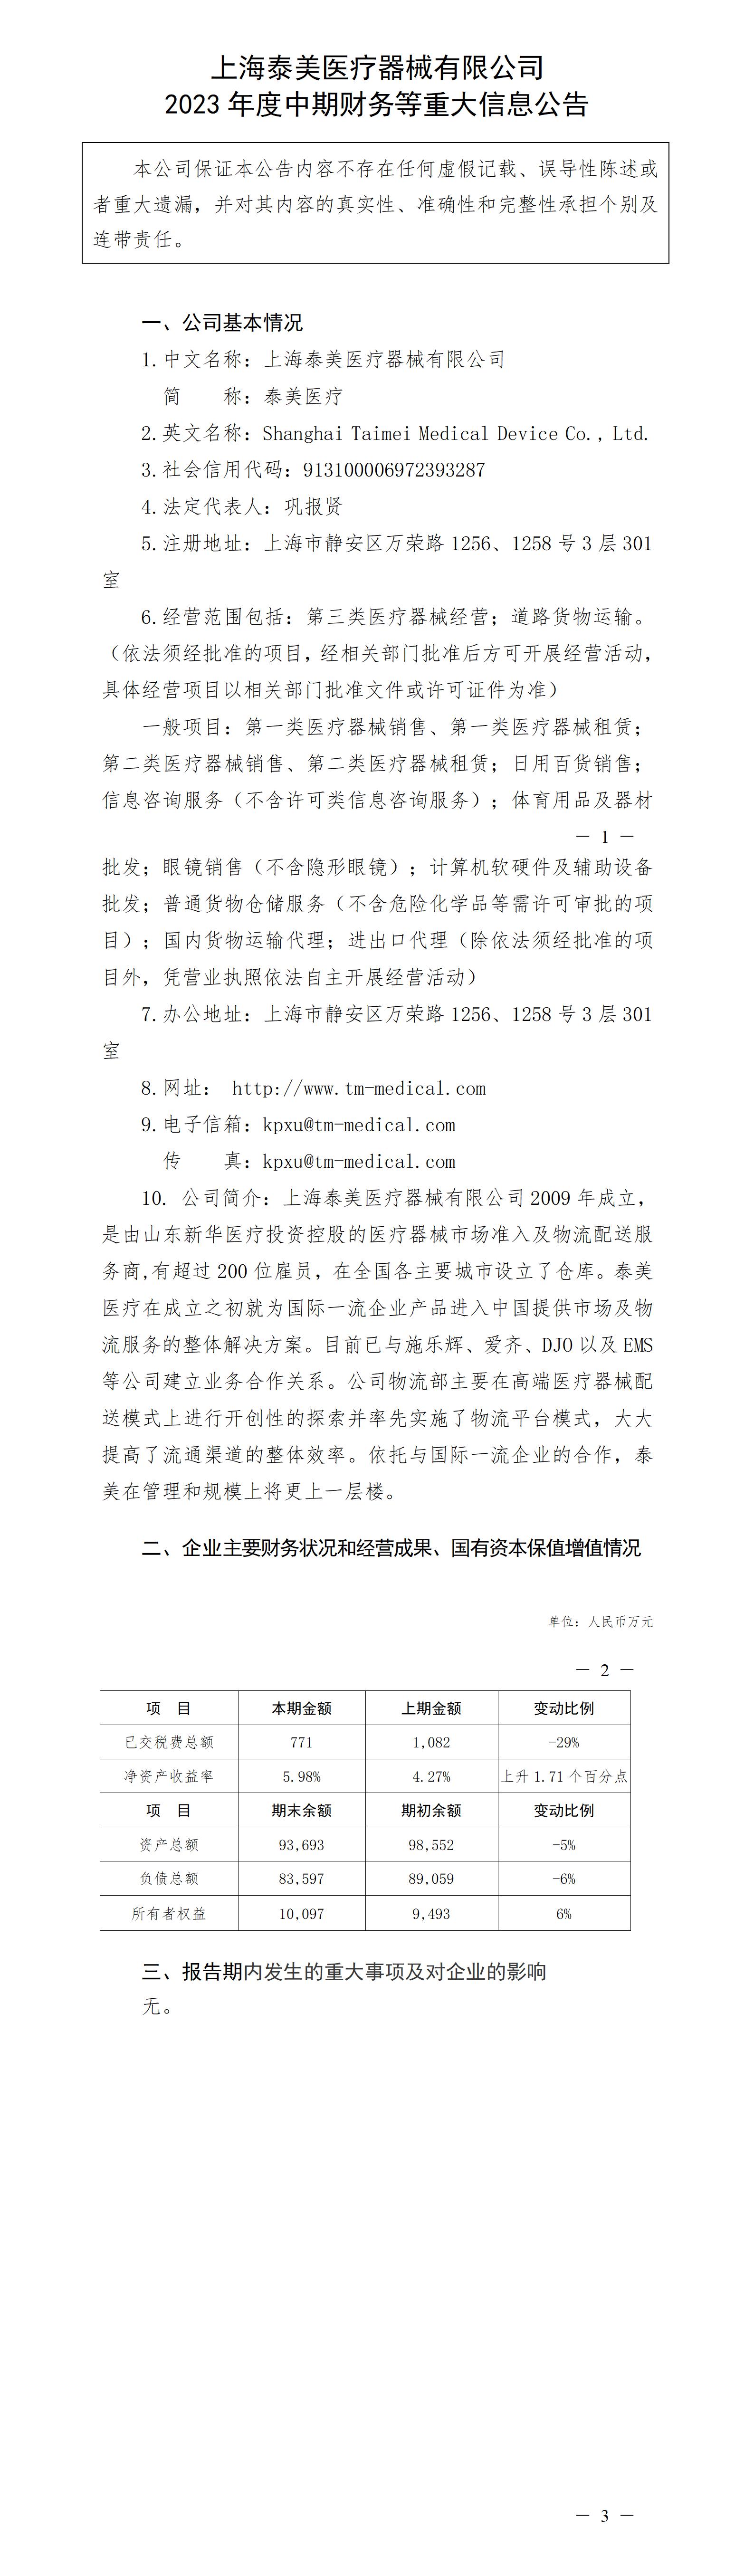 上海泰美医疗器械有限公司2023年度中期财务等重大信息公告_01.jpg